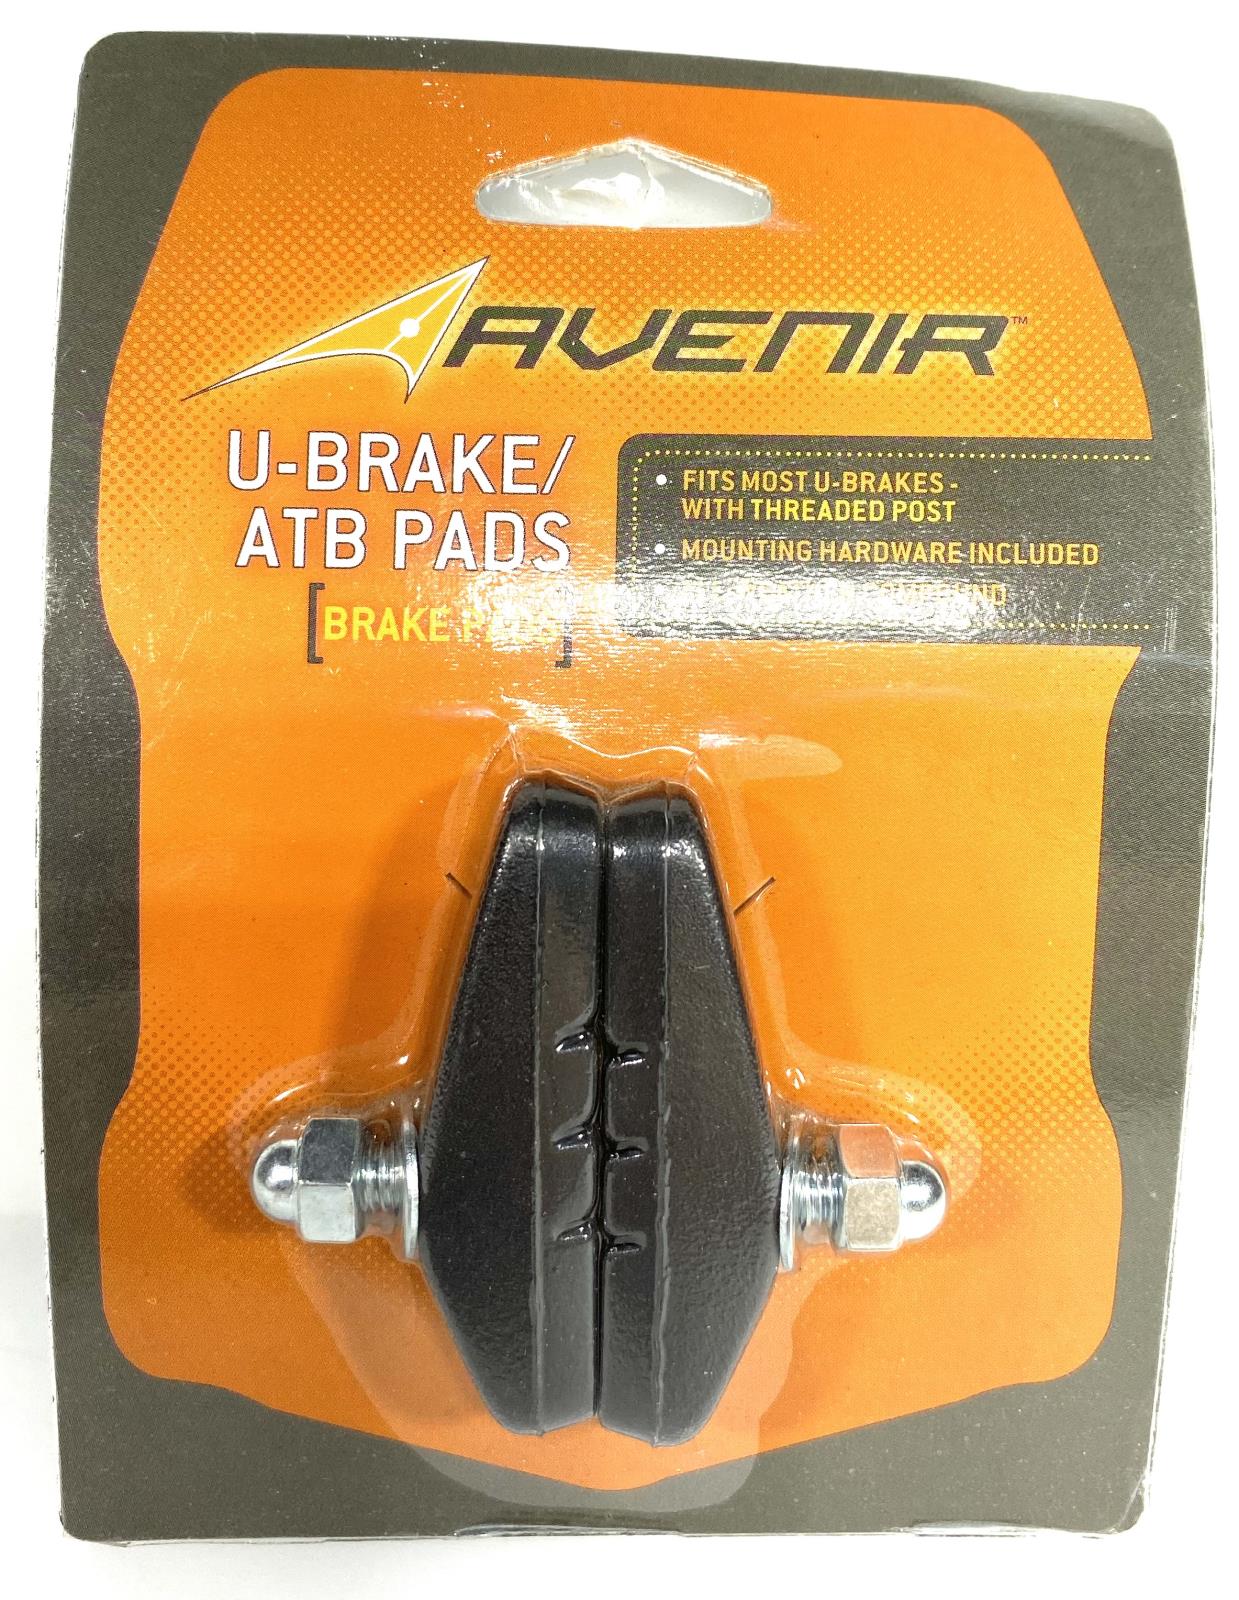 Avenir U-Brake ATB Bike Brake Shoes Set With Pads 1 Pair With Mounting Hardware - Random Bike Parts